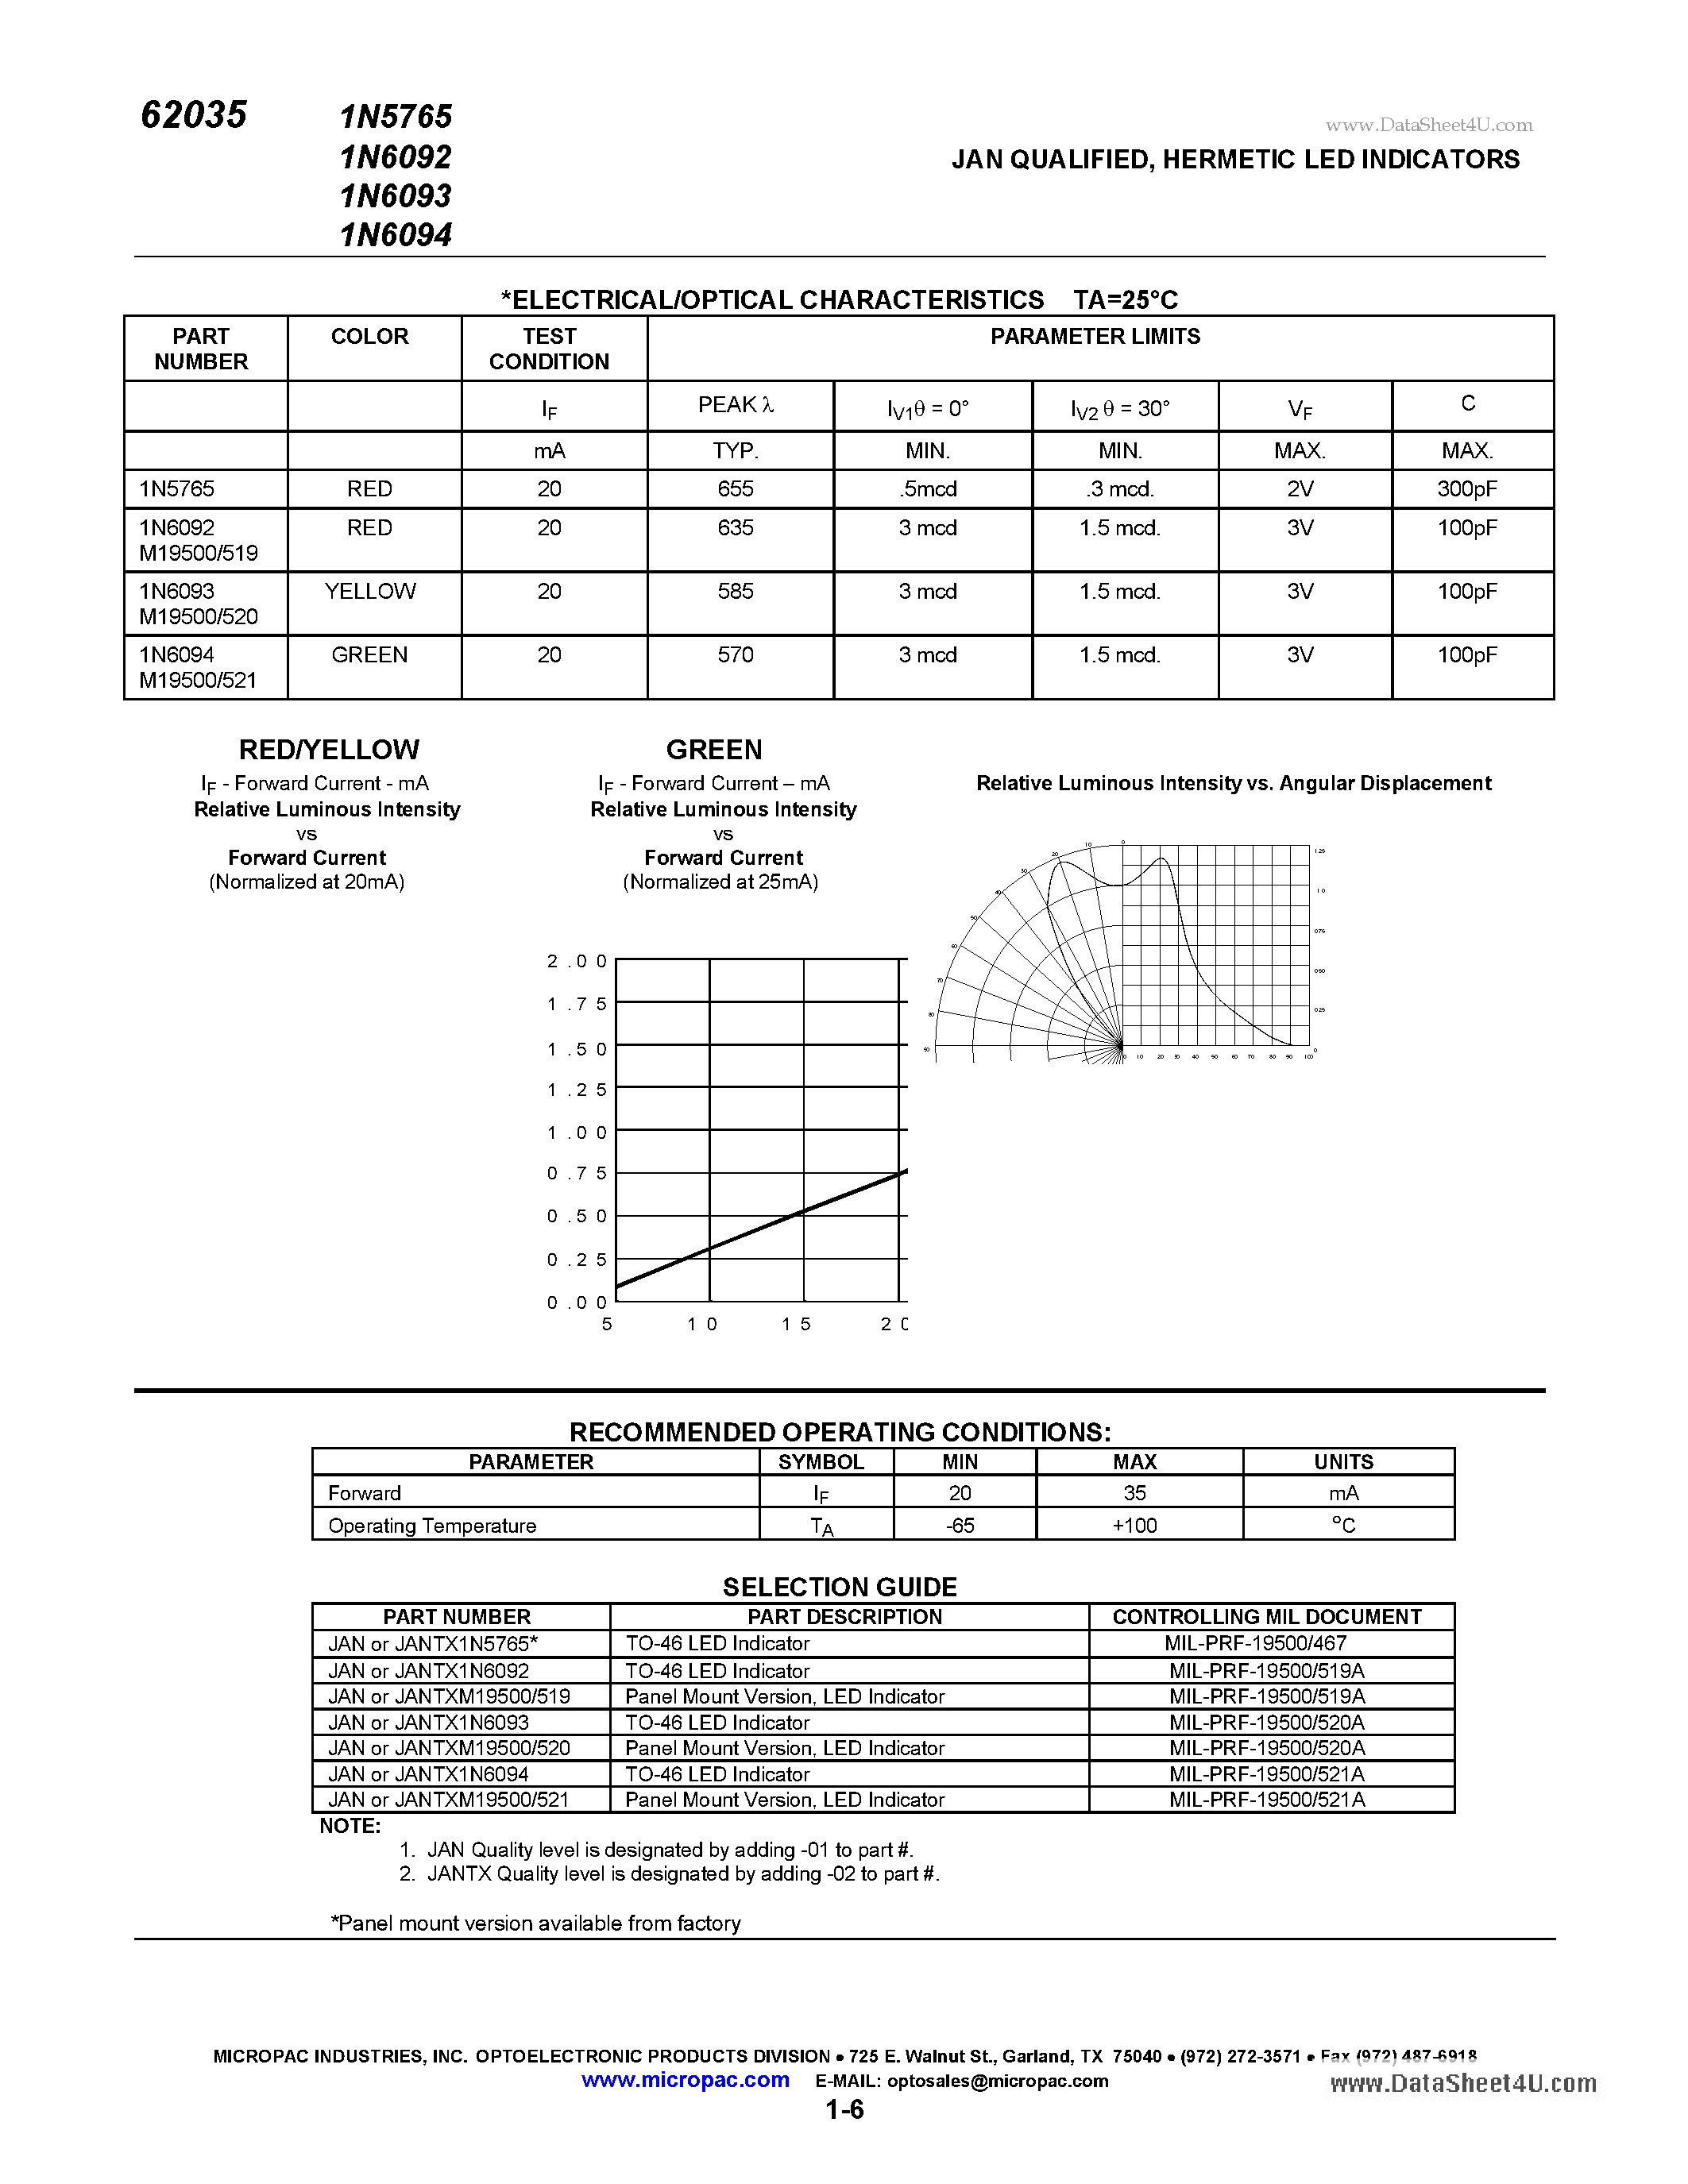 Datasheet 1N6092 - (1N6092 - 1N6094) JAN QUALIFIED HERMETIC LED INDICATORS page 2